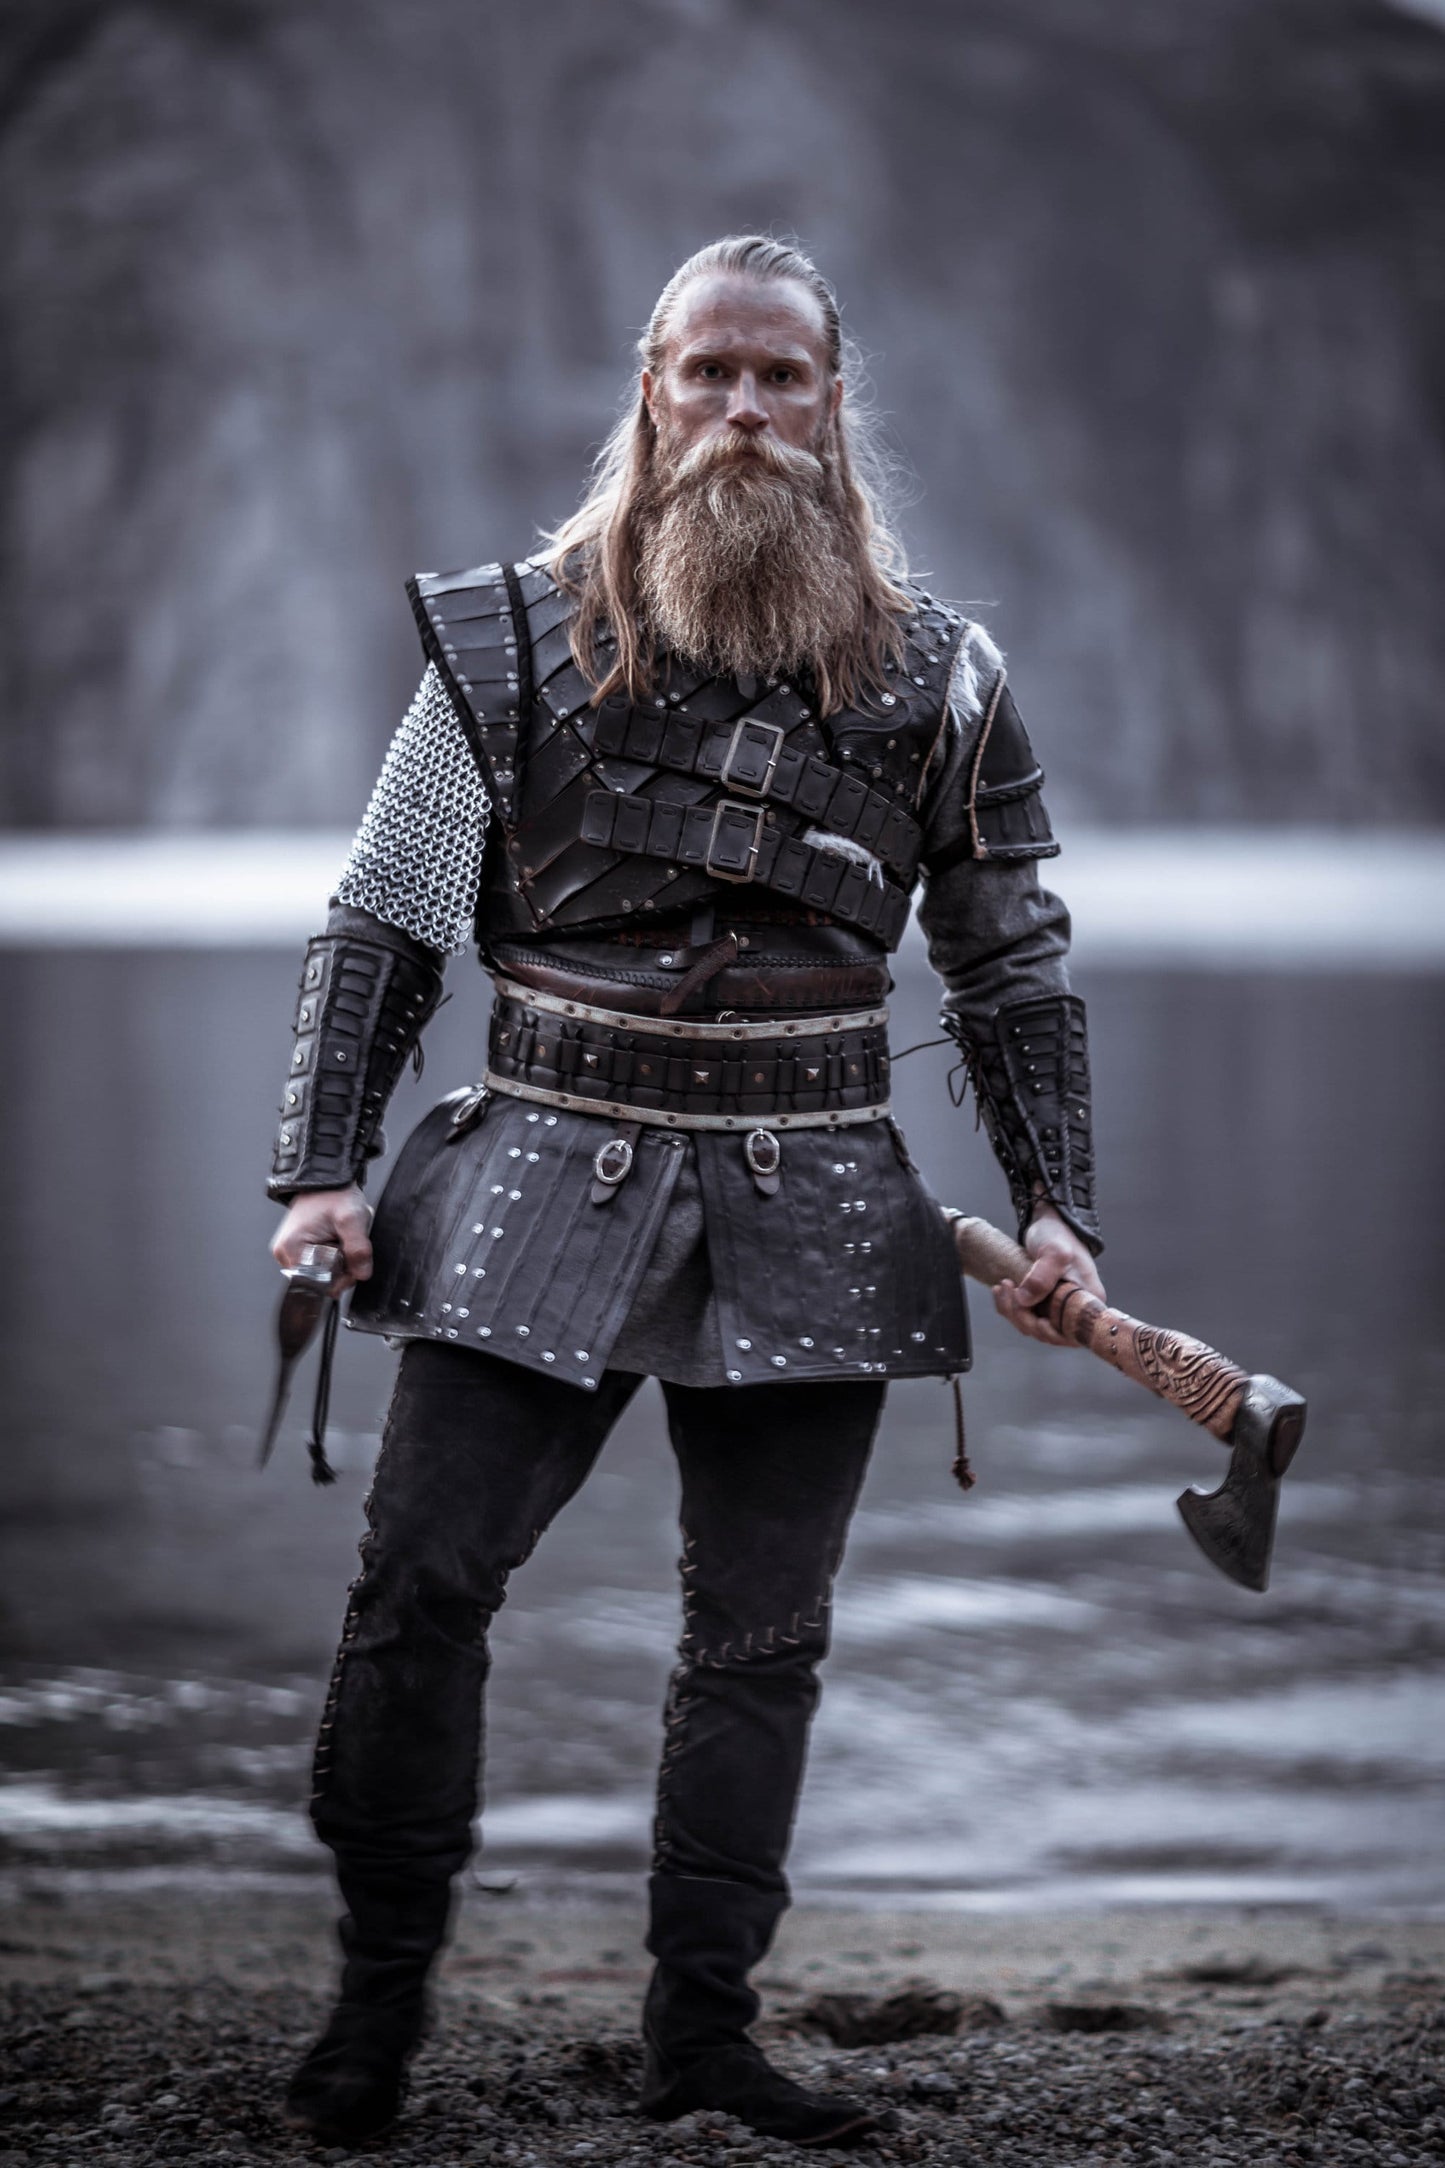 Vikings' Ivar the Boneless – A Closer Look